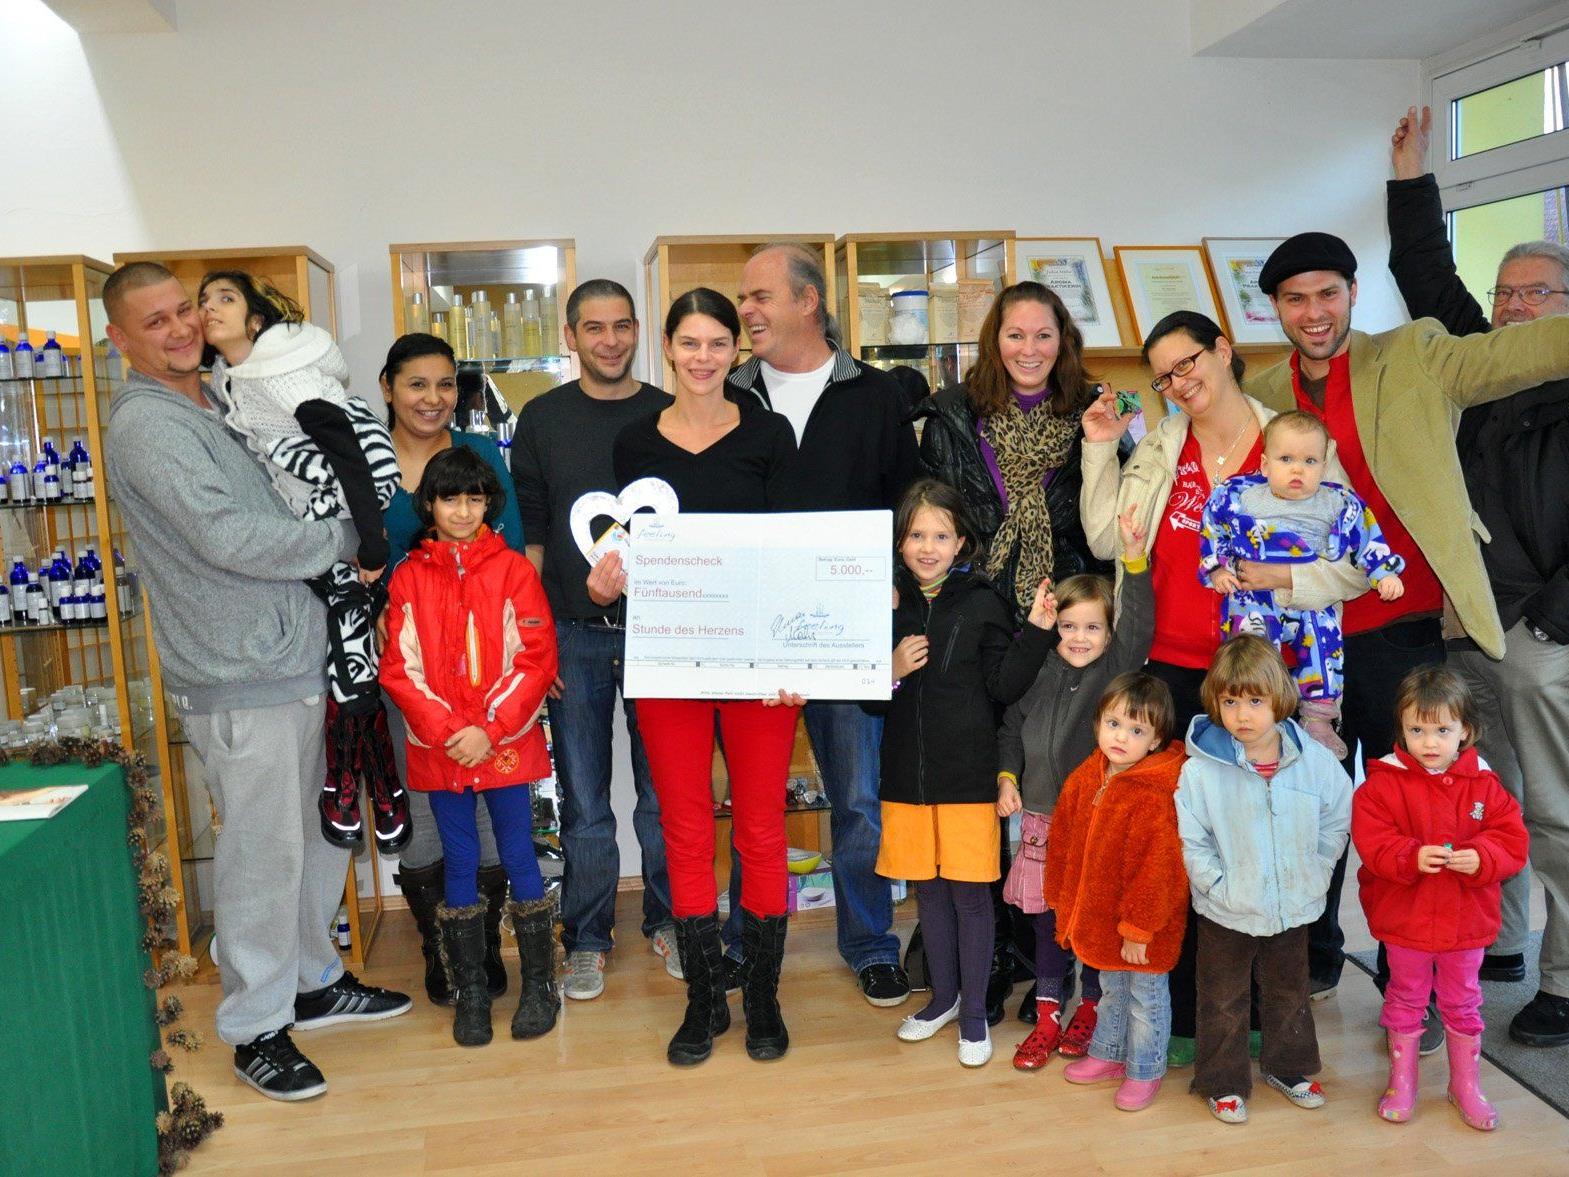 Die Teams von Feeling und Stunde des Herzens freuen sich gemeinsam mit den Familien von Snezana und Gabriella über die großzügige Spende